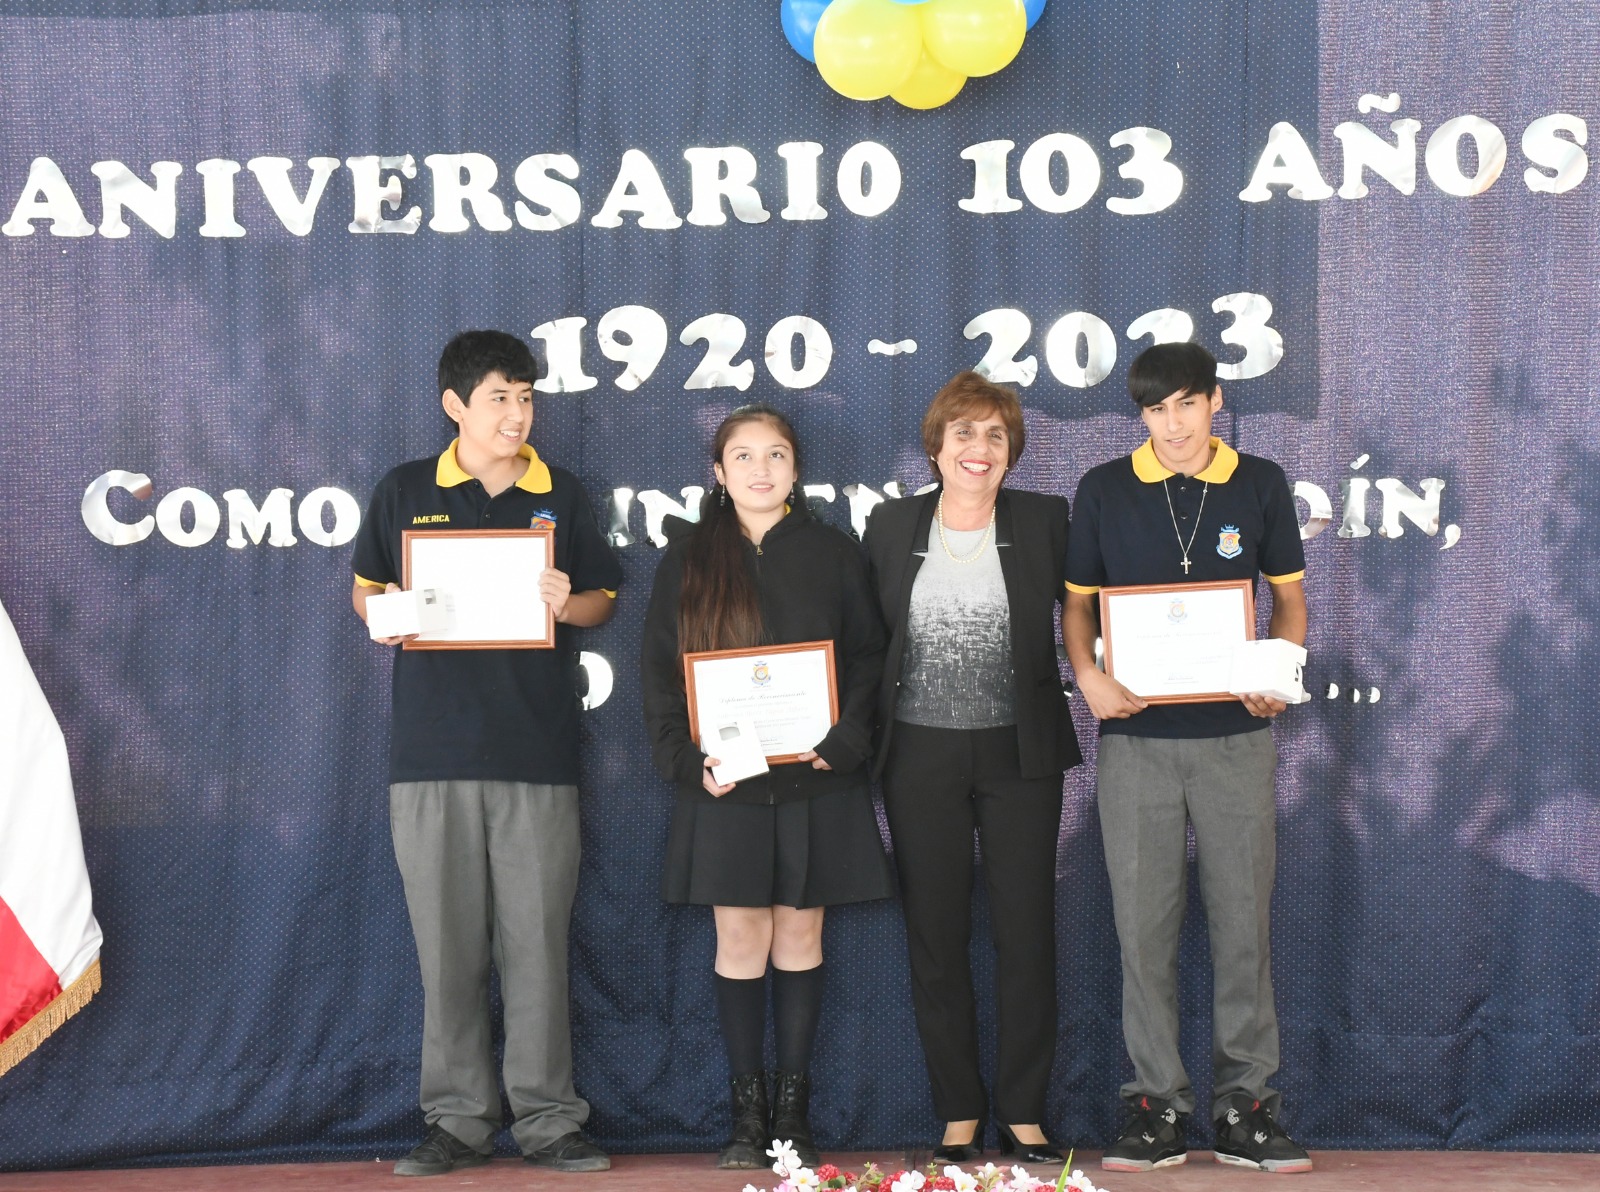 LOS ANDES: Con emotivos reconocimientos el Liceo Politécnico América celebró su 103 aniversario